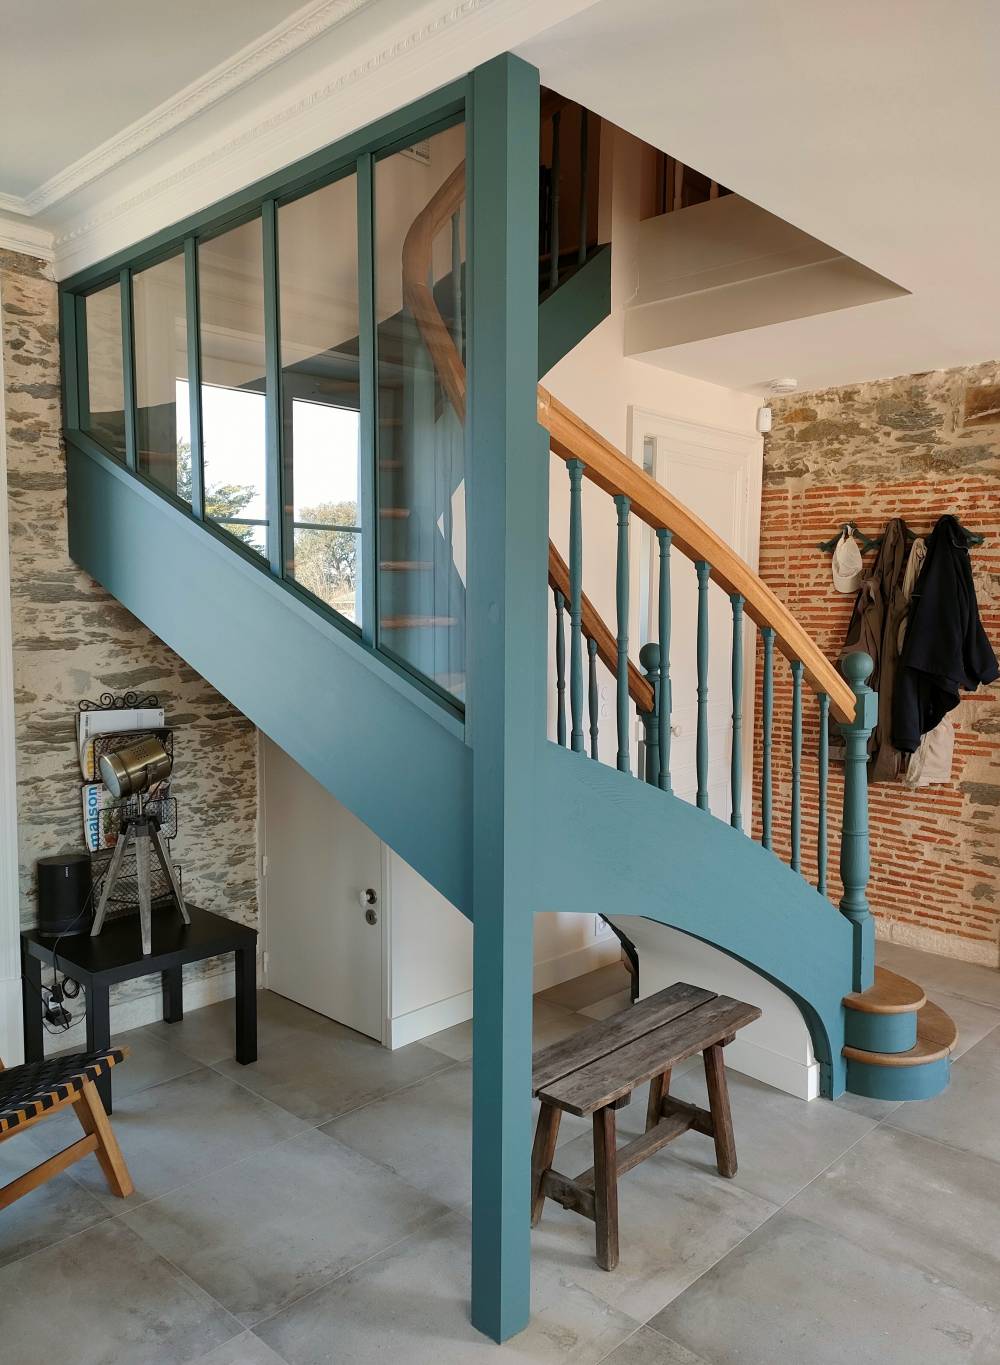 Rénovation d'un escalier existant avec verrière incorporée